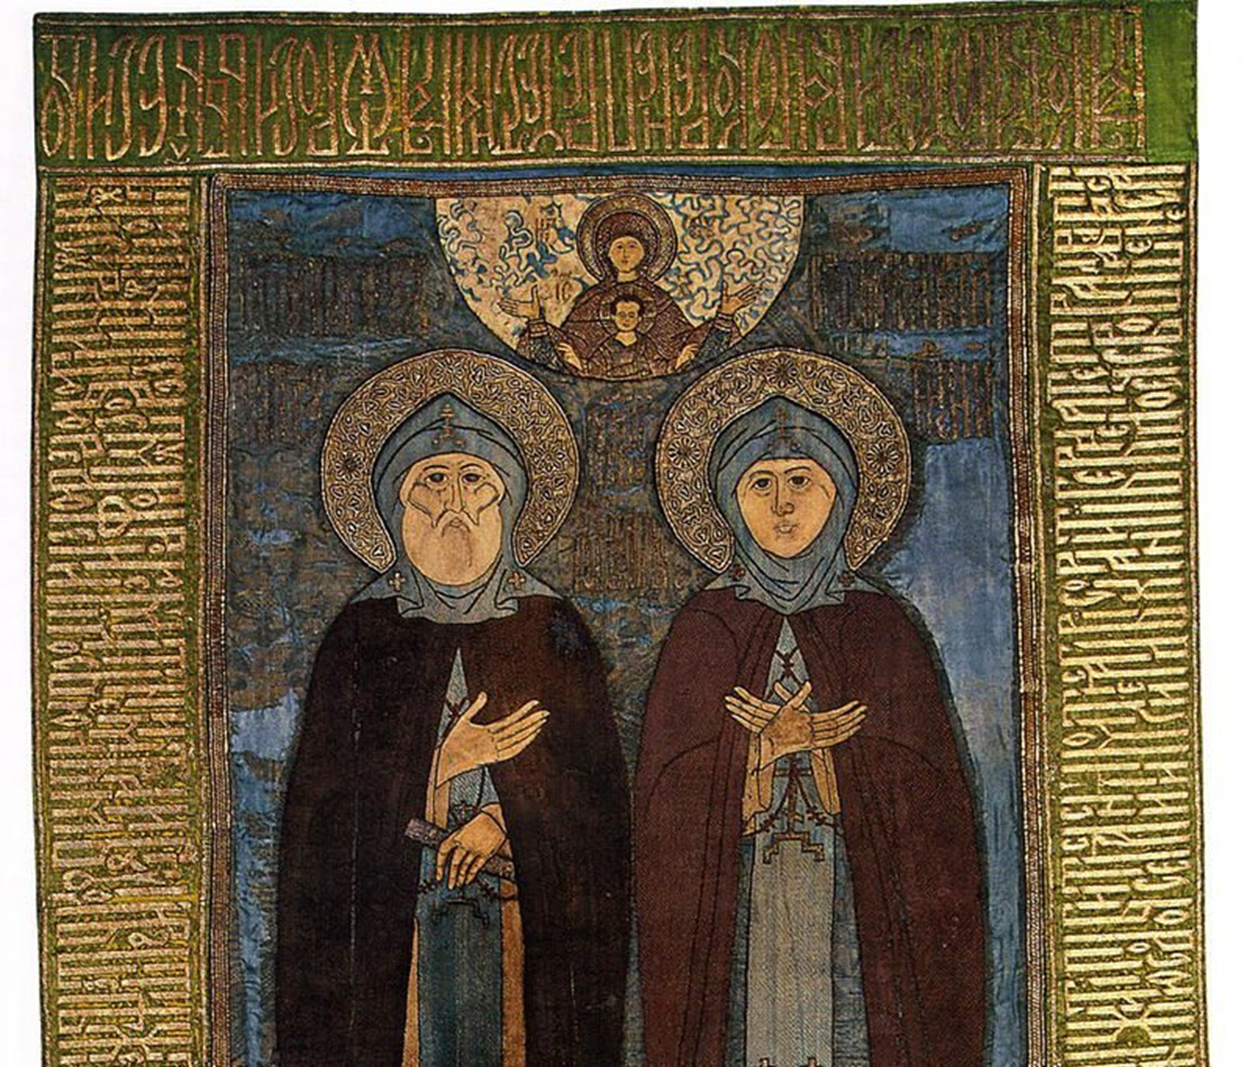 Особо почитаемые святые. Икона "Муромские чудотворцы, с житием Петра и Февронии" 1669 года.